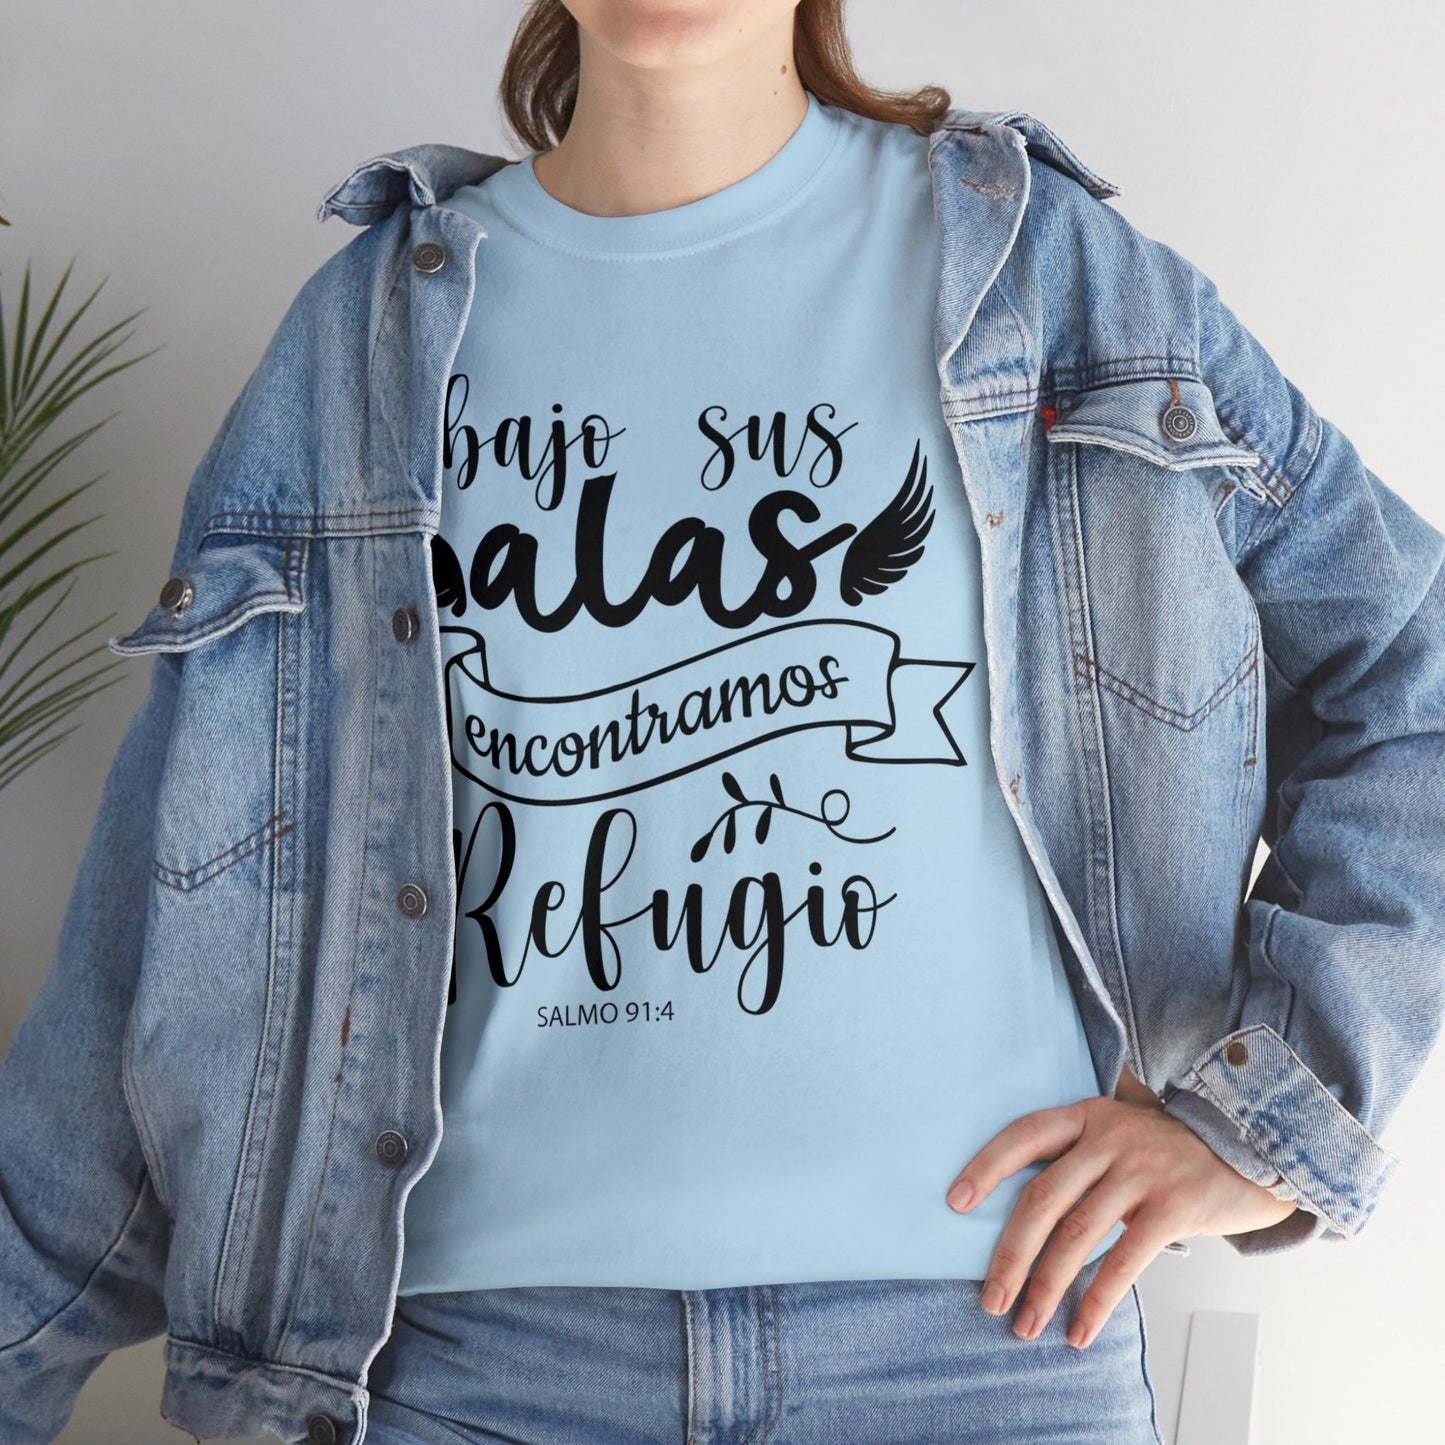 Camiseta Cristiana - Bajo sus alas encontramos refugio